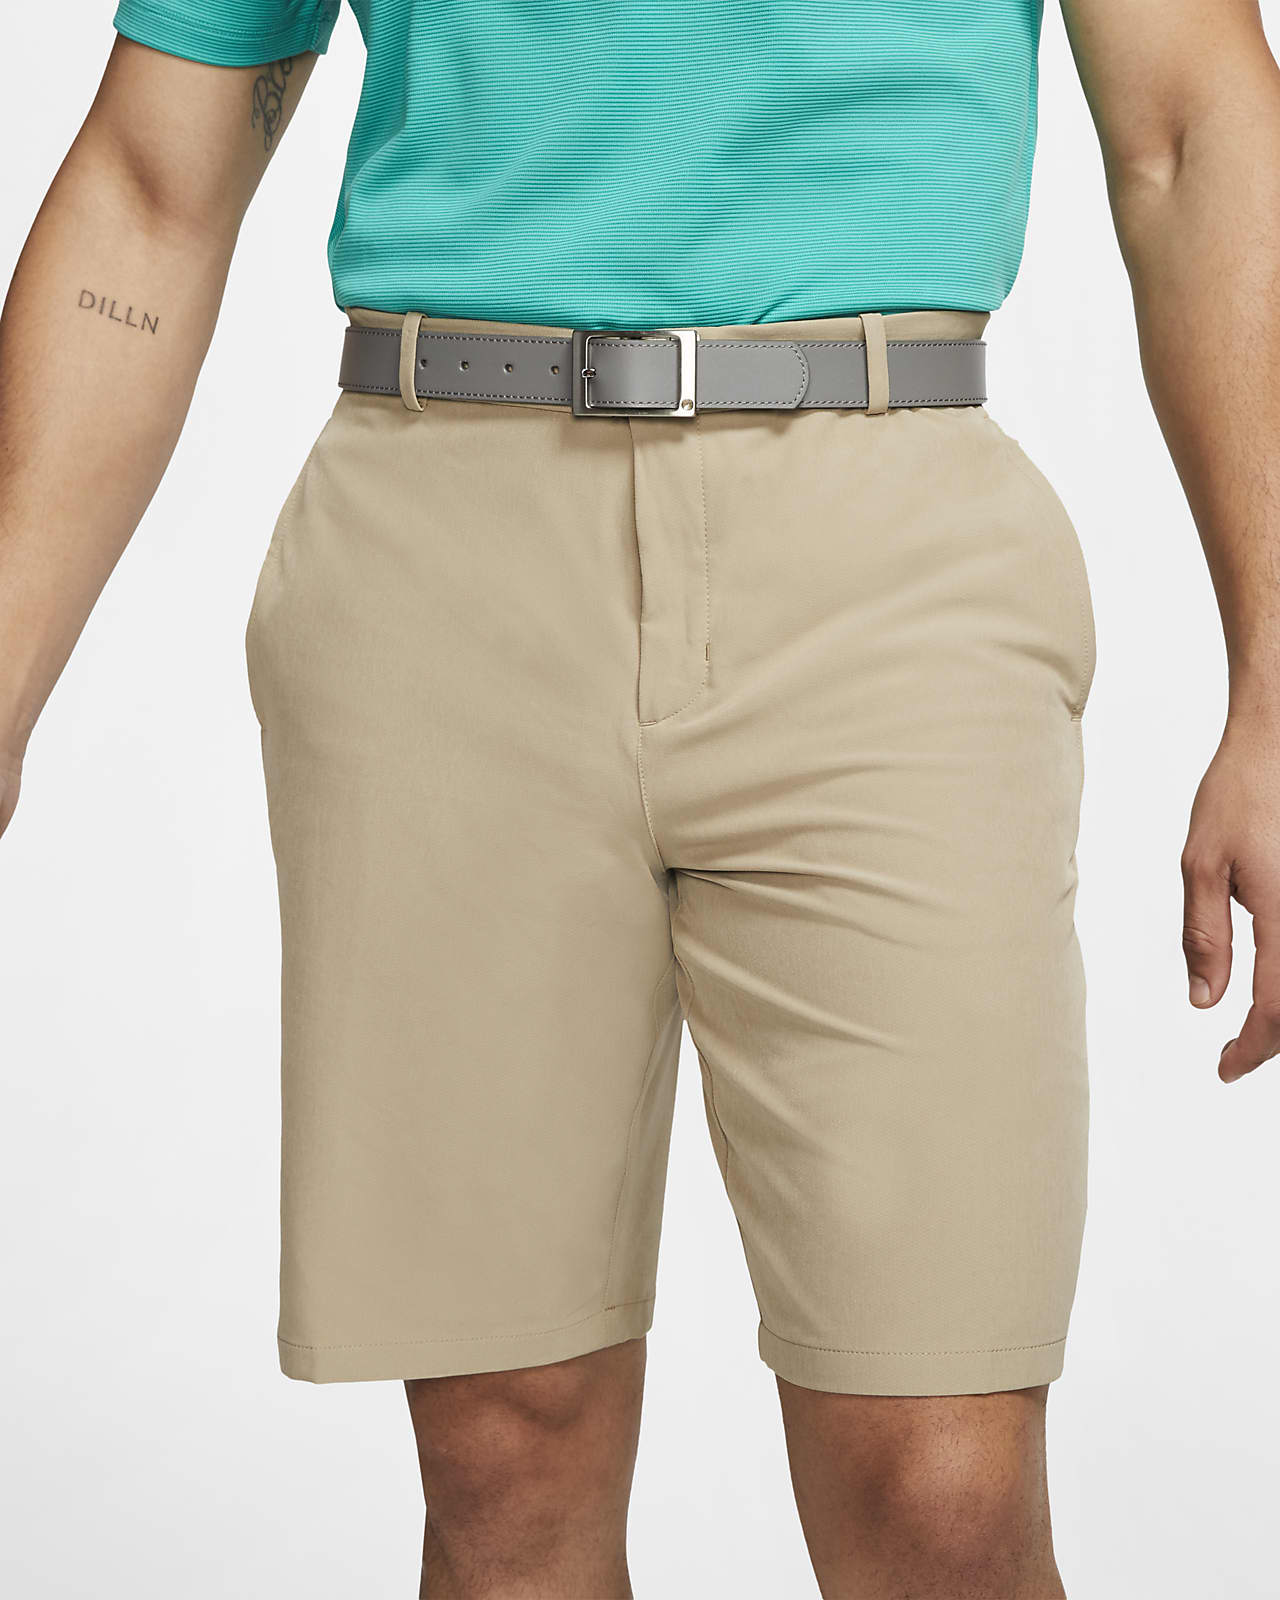 nike hybrid golf shorts